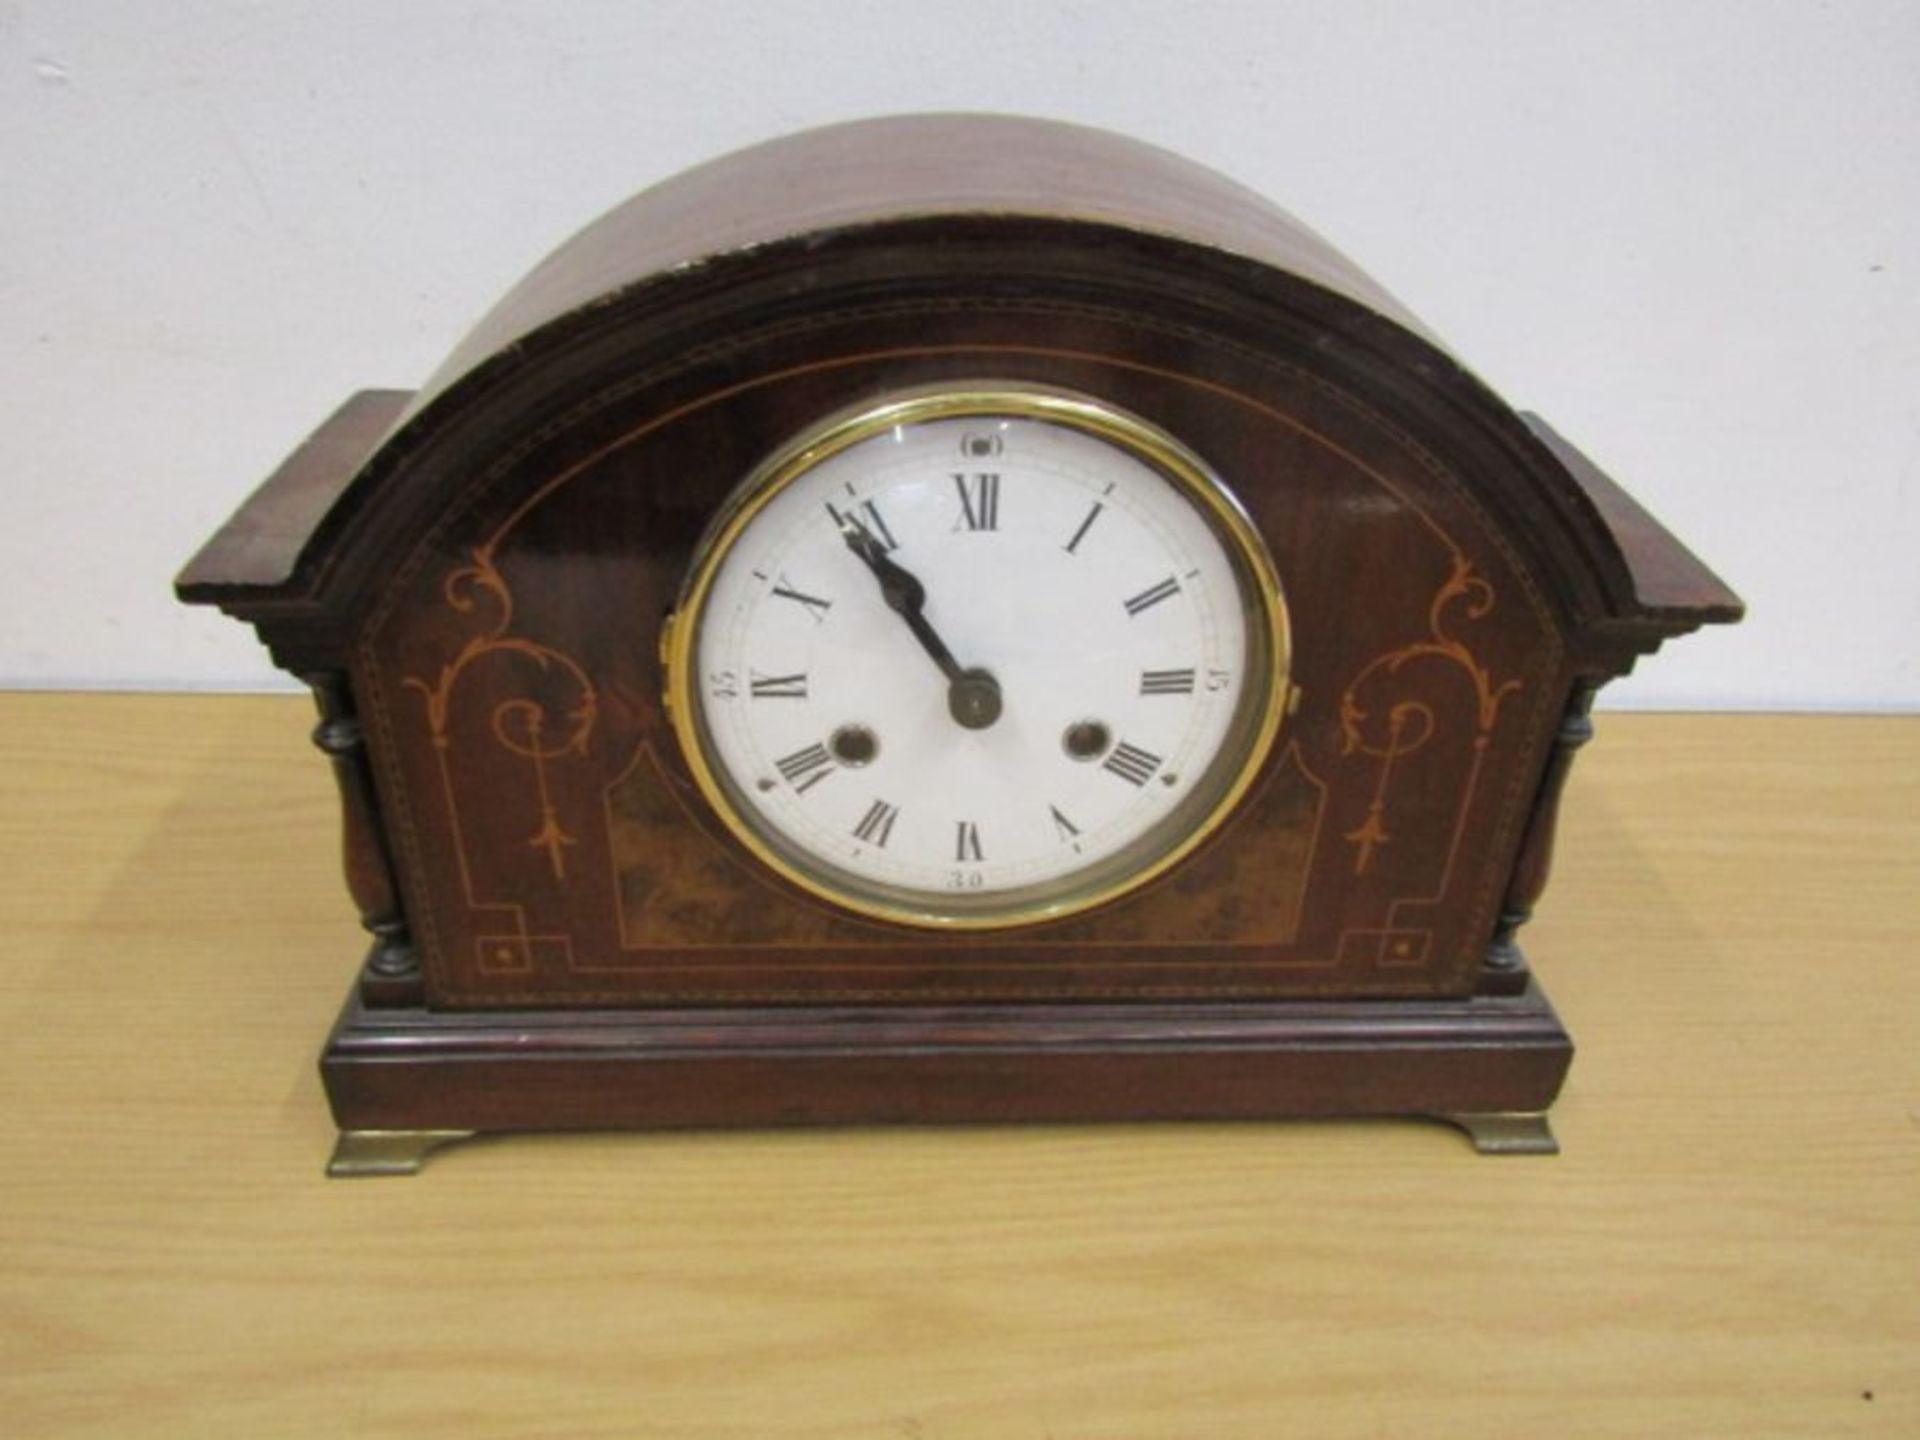 Mahogany inlaid mantel clock with key